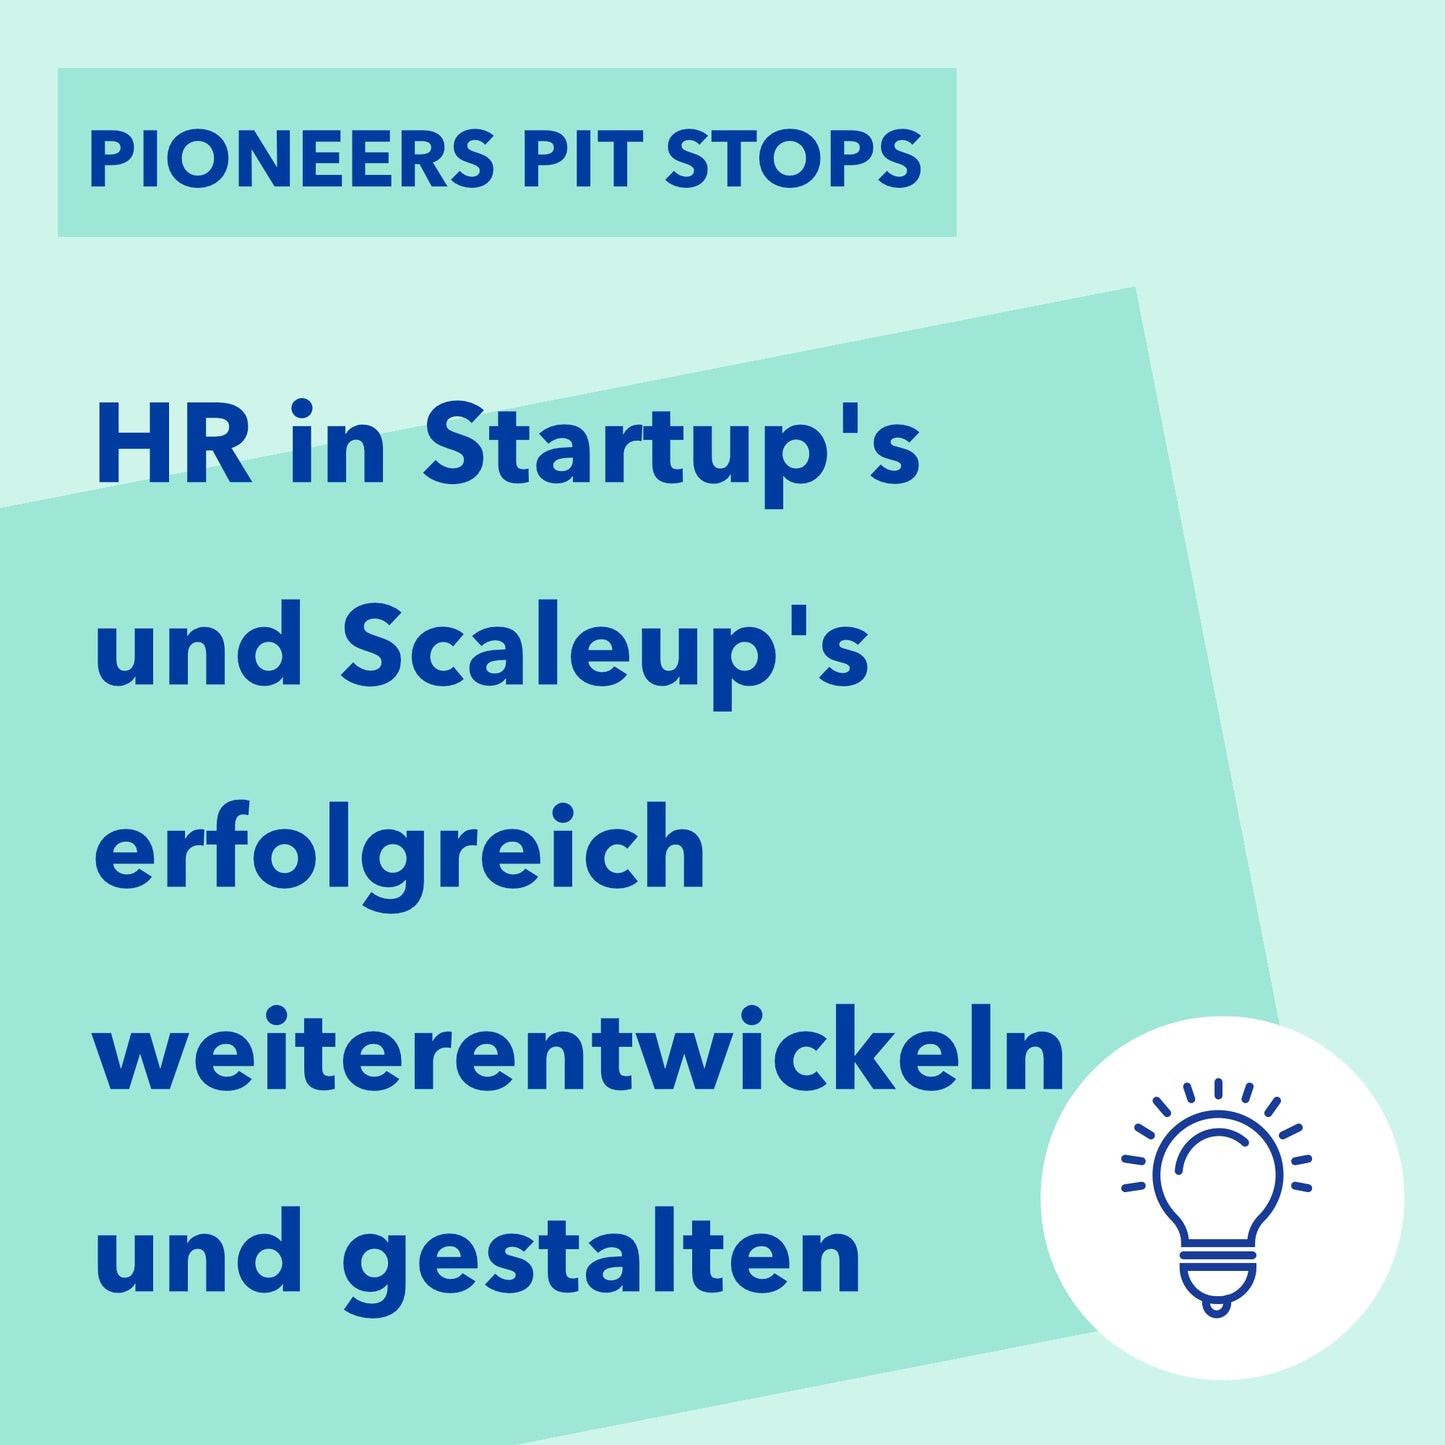 HR in Startup's und Scaleup's erfolgreich weiterentwickeln und gestalten